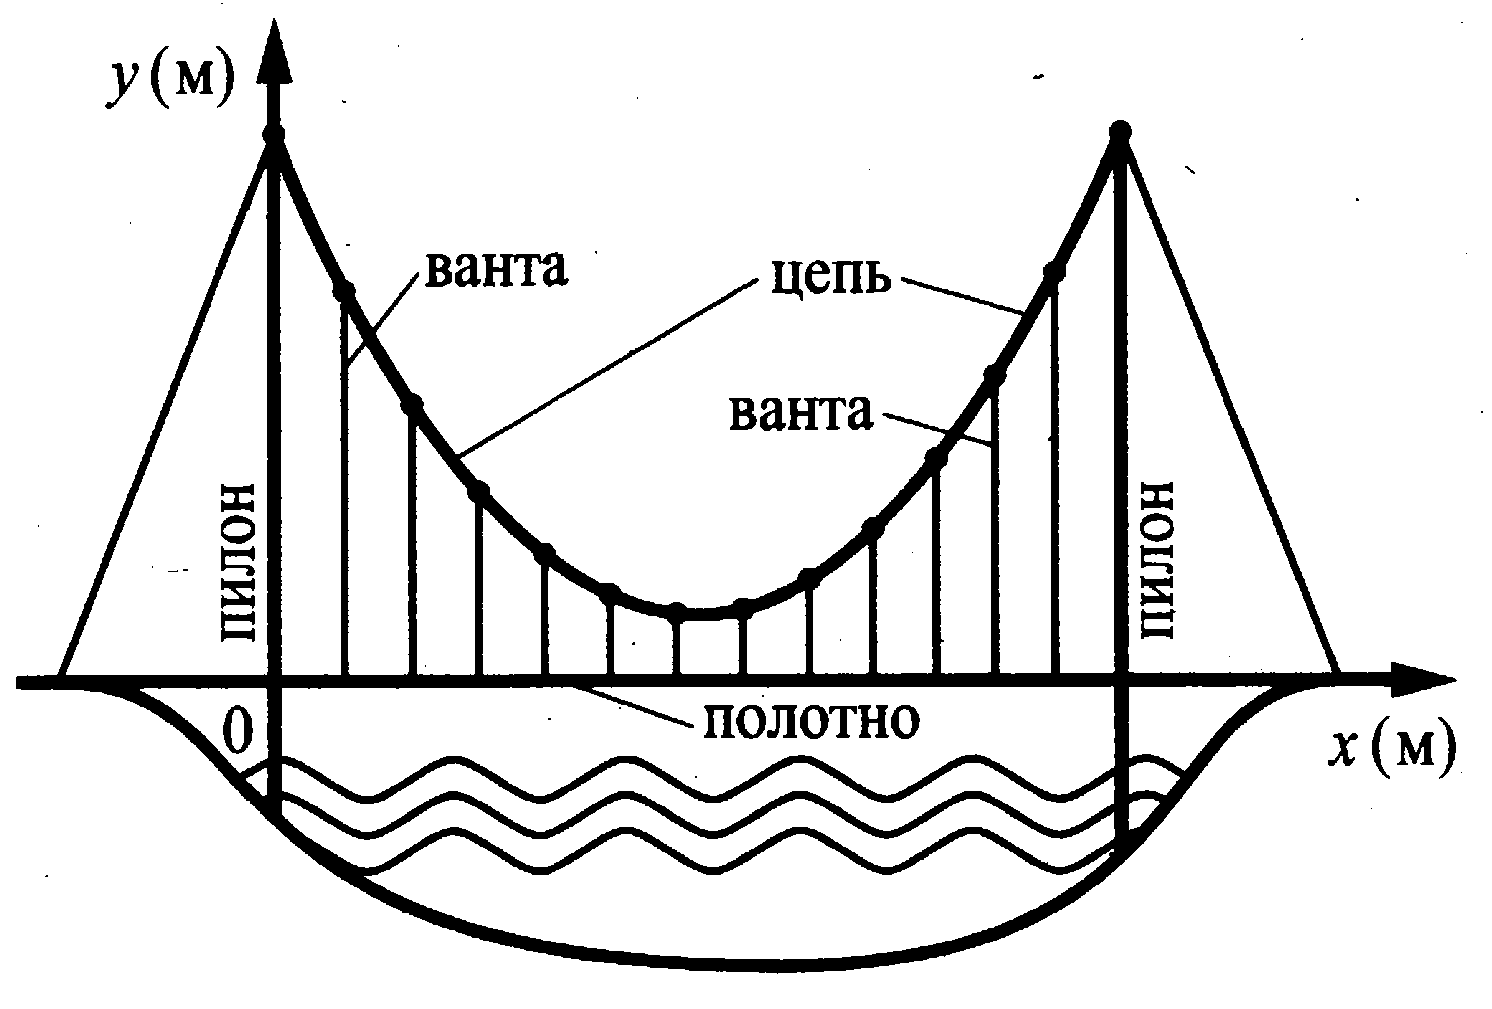 Схема вантового моста ЕГЭ. Схема вантового моста рисунок. Схема вантового моста вертикальные пилоны на рисунке. На рисунке изображена схема вантового моста.